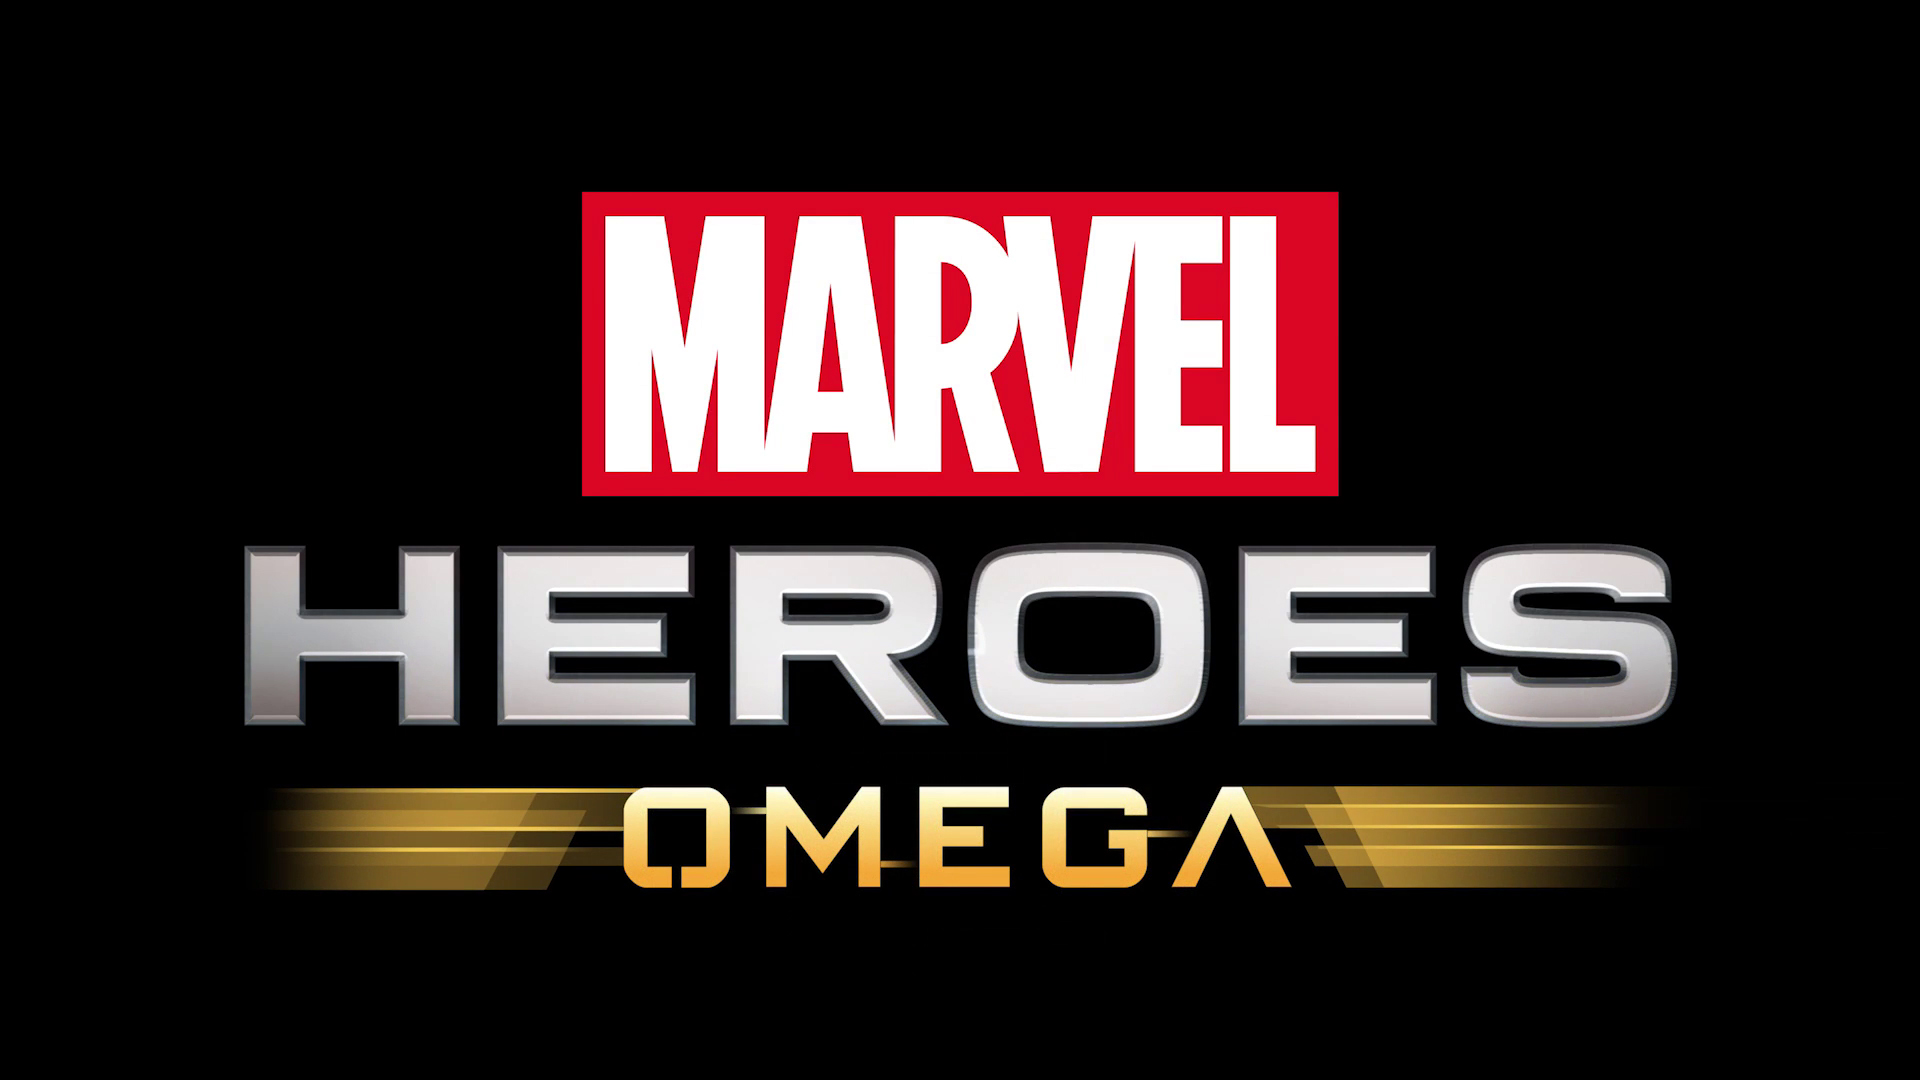 Popular Marvel Heroes Omega 4K for smartphone